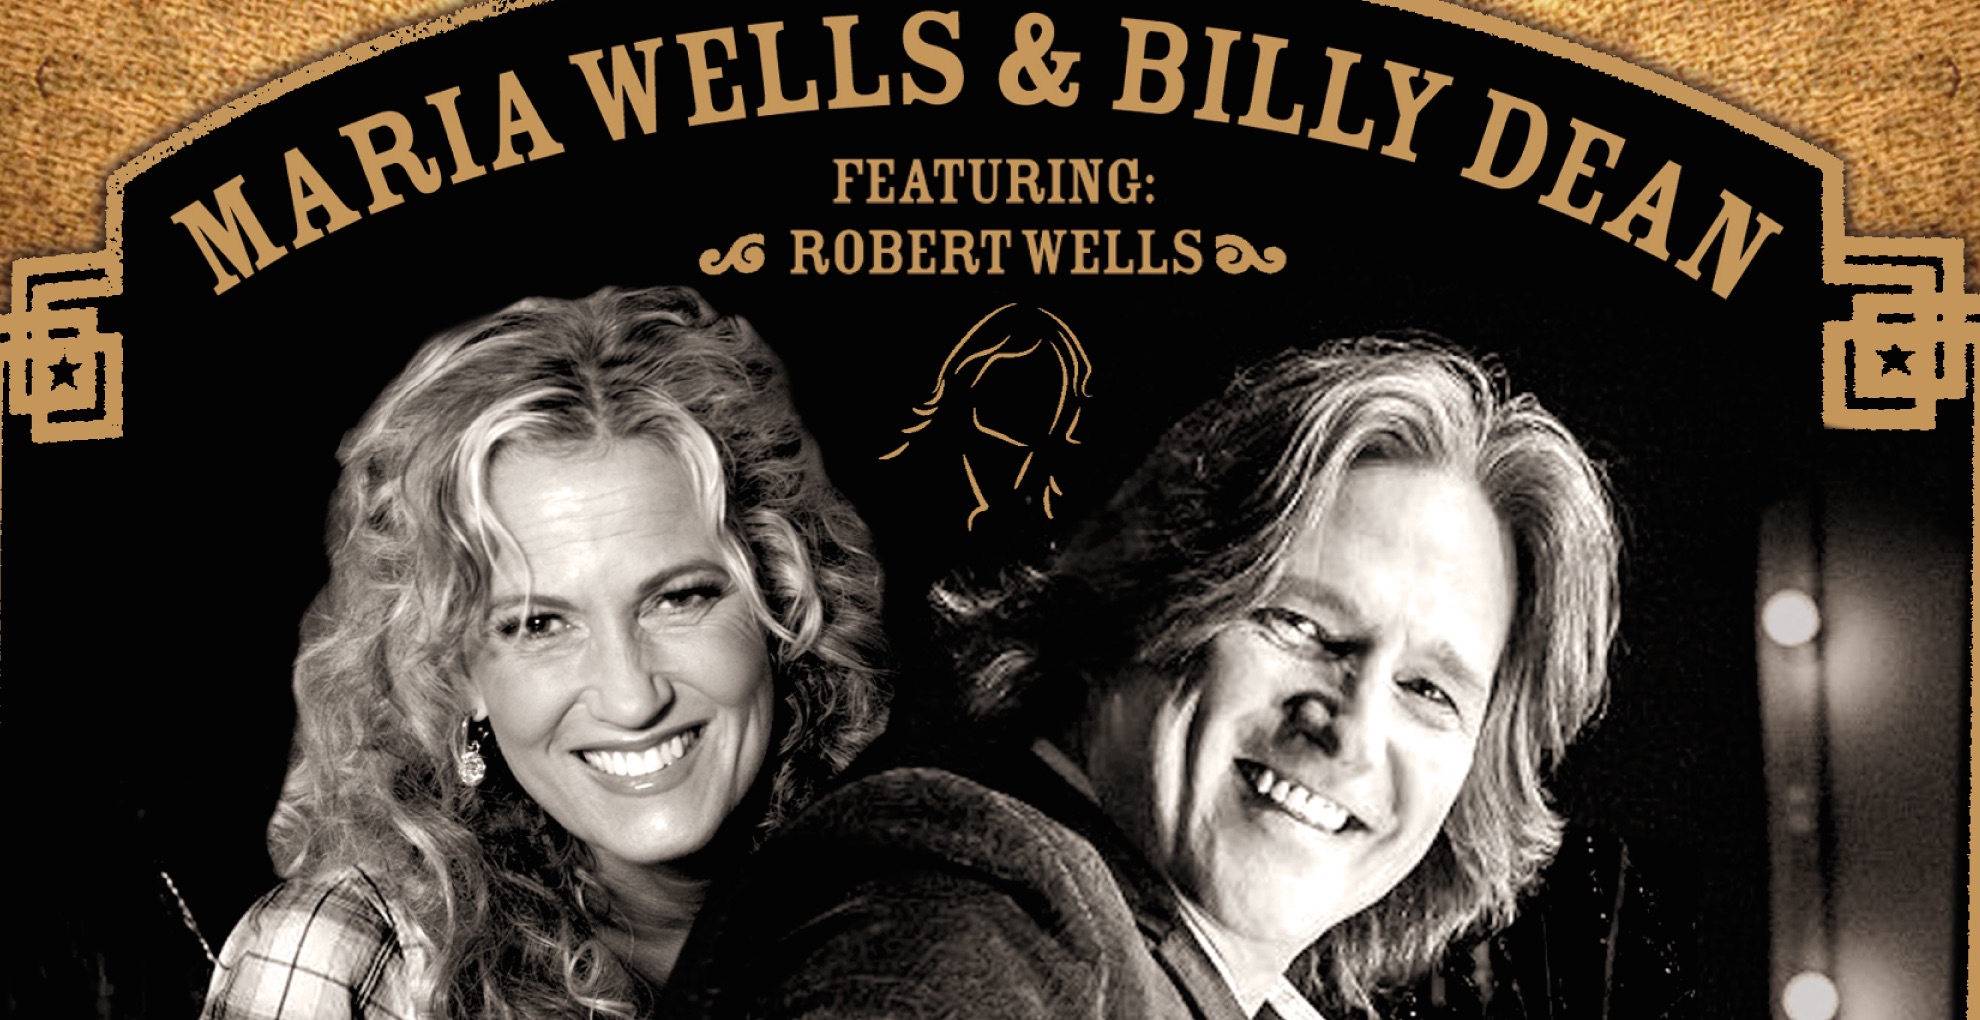 Amerikanska countryartisten Billy Dean och svenska Maria Wells samlar världsmusiker med countryklassikern ”Crazy”!